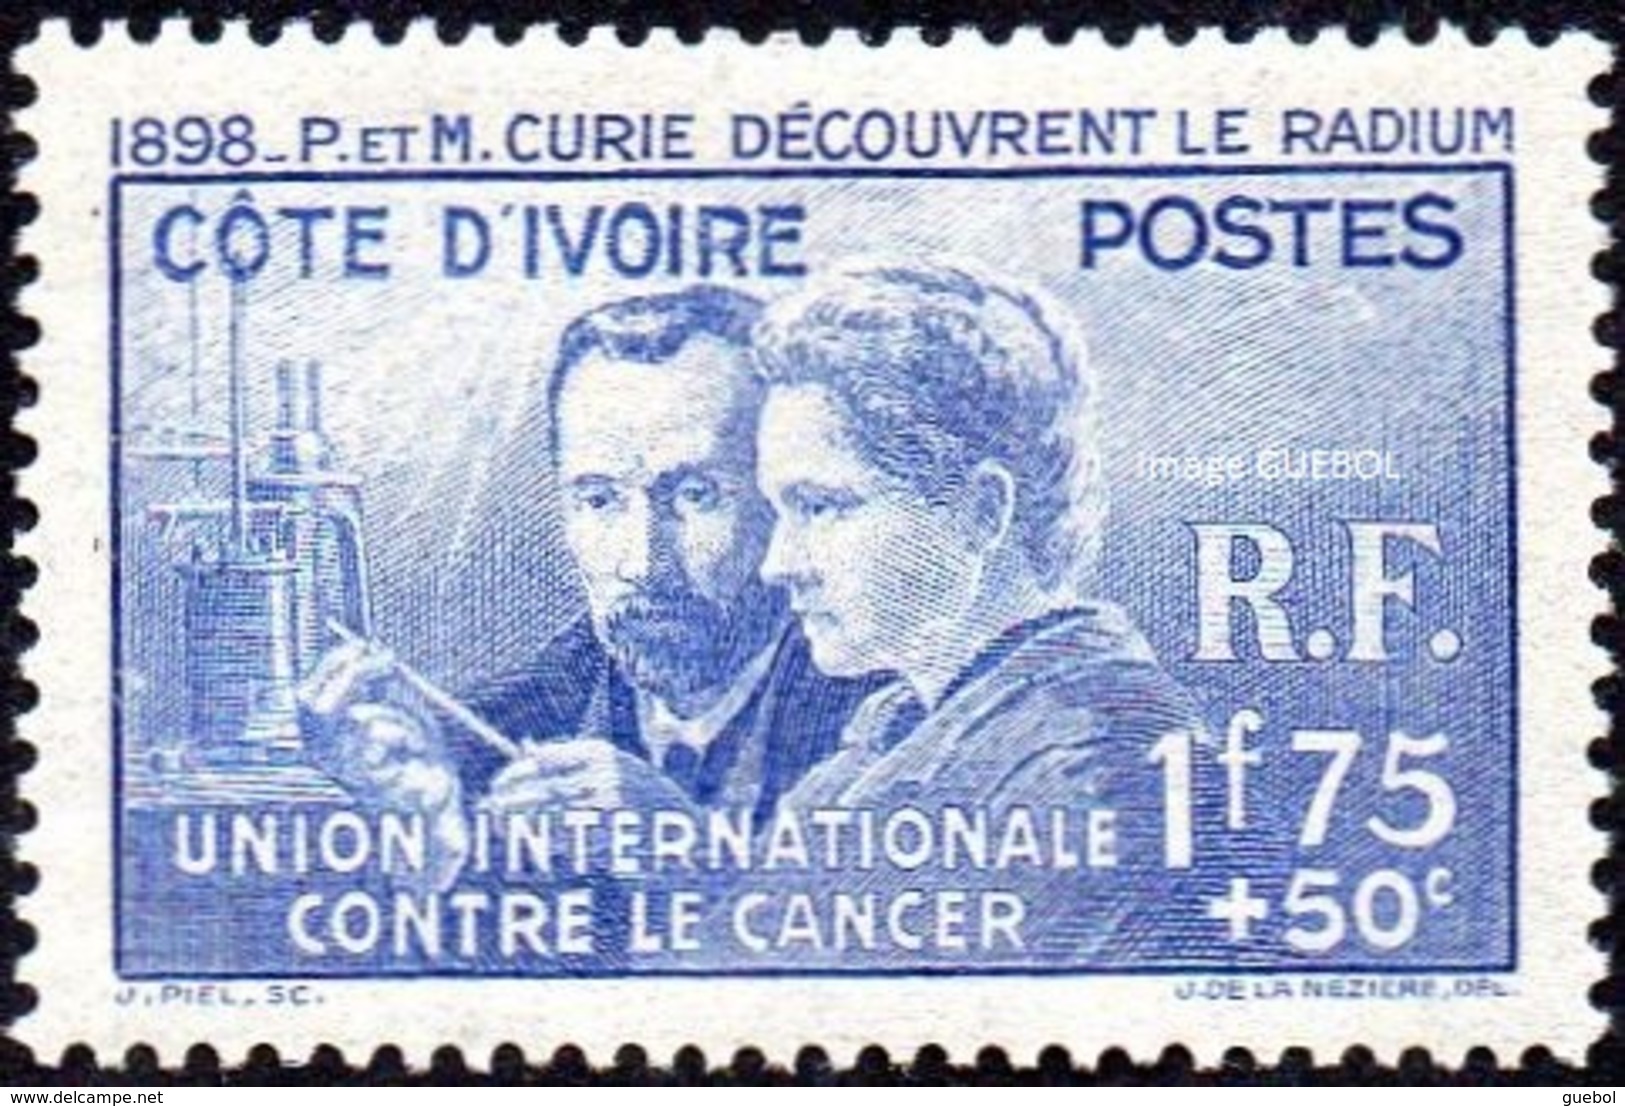 Pierre Et Marie Curie Détail De La Série * Cote D'Ivoire N° 140 - Recherche Sur Le Cancer - 1938 Pierre Et Marie Curie